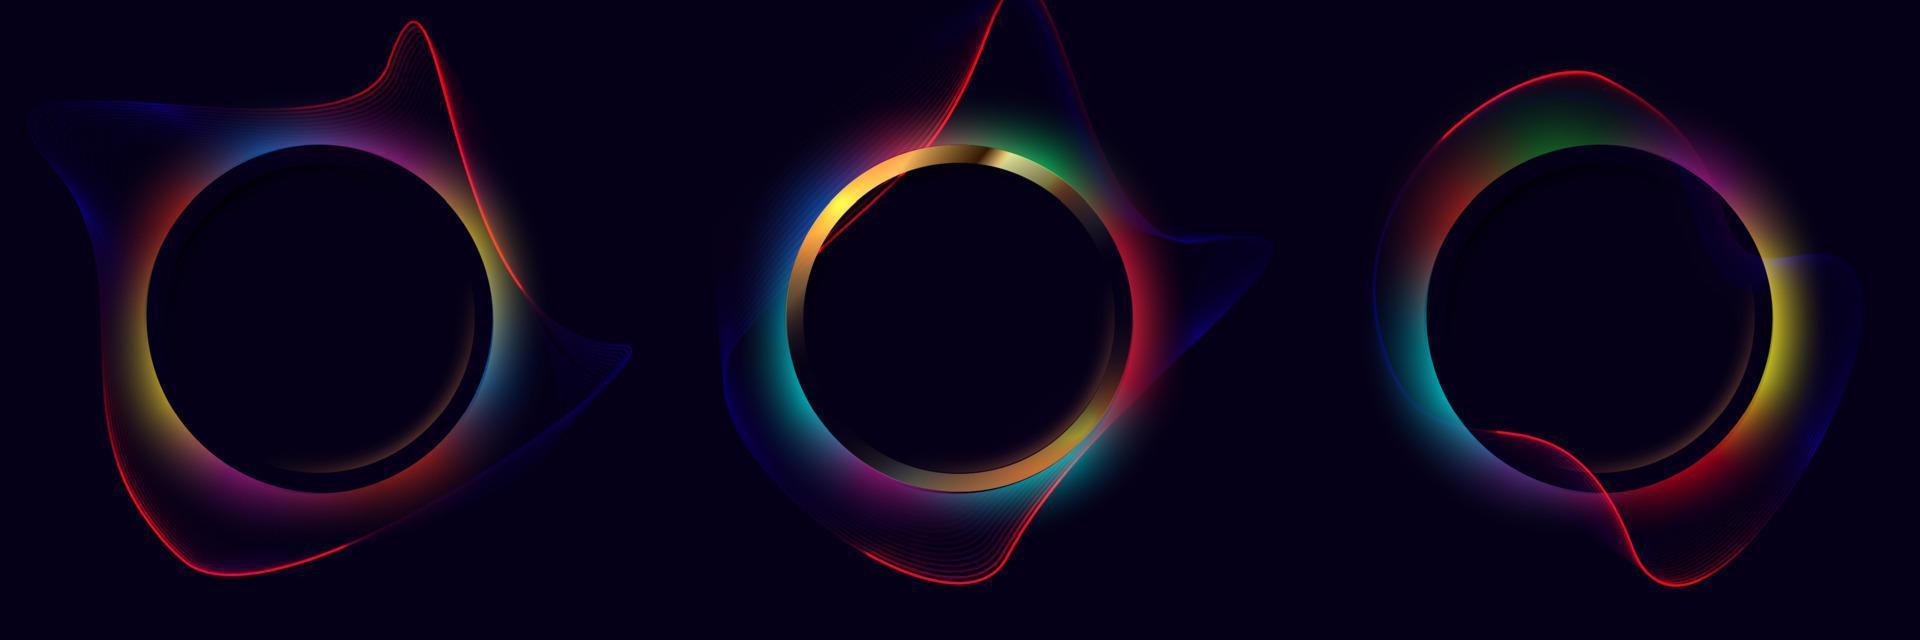 satz von kreisrahmen mit neon leuchtenden mehrfarbigen wellenförmigen dynamischen linien rund um leuchten und wirbellichteffekt auf schwarzem hintergrund. vektor